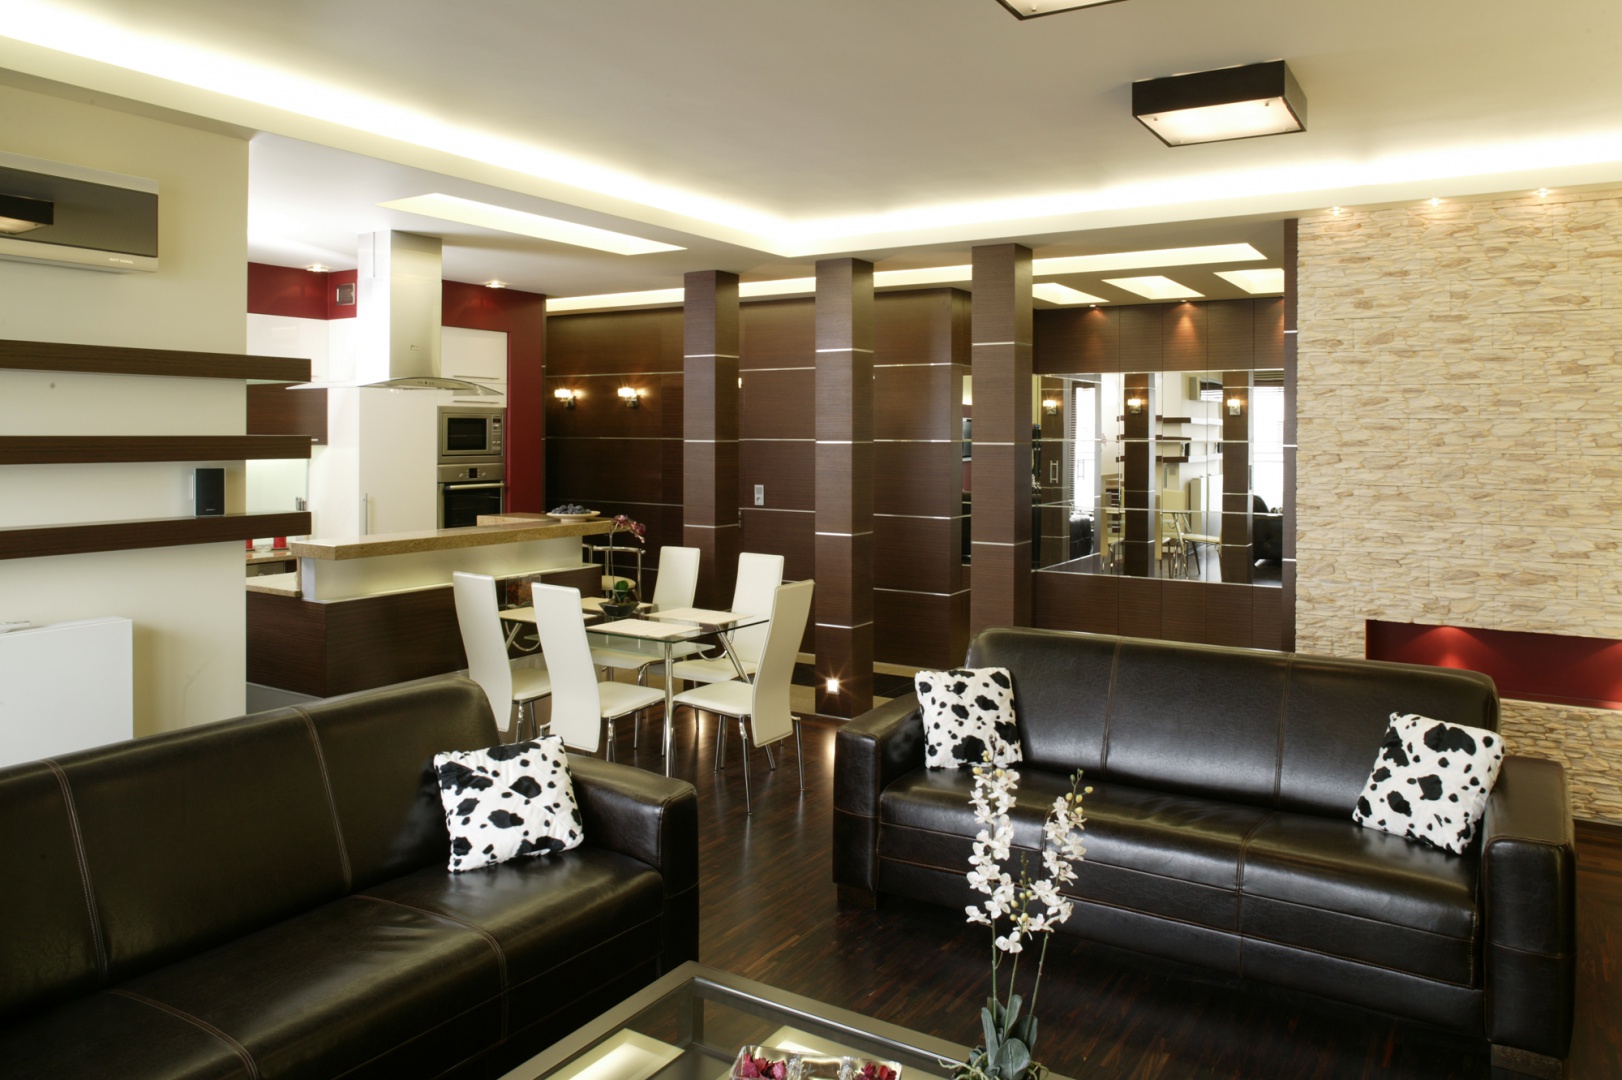 Strefa dzienna – salon i kuchnia – w nowocześnie i z rozmachem urządzonym apartamencie tworzy jedną otwartą i spójną stylistycznie przestrzeń. Fot. Bartosz Jarosz.
